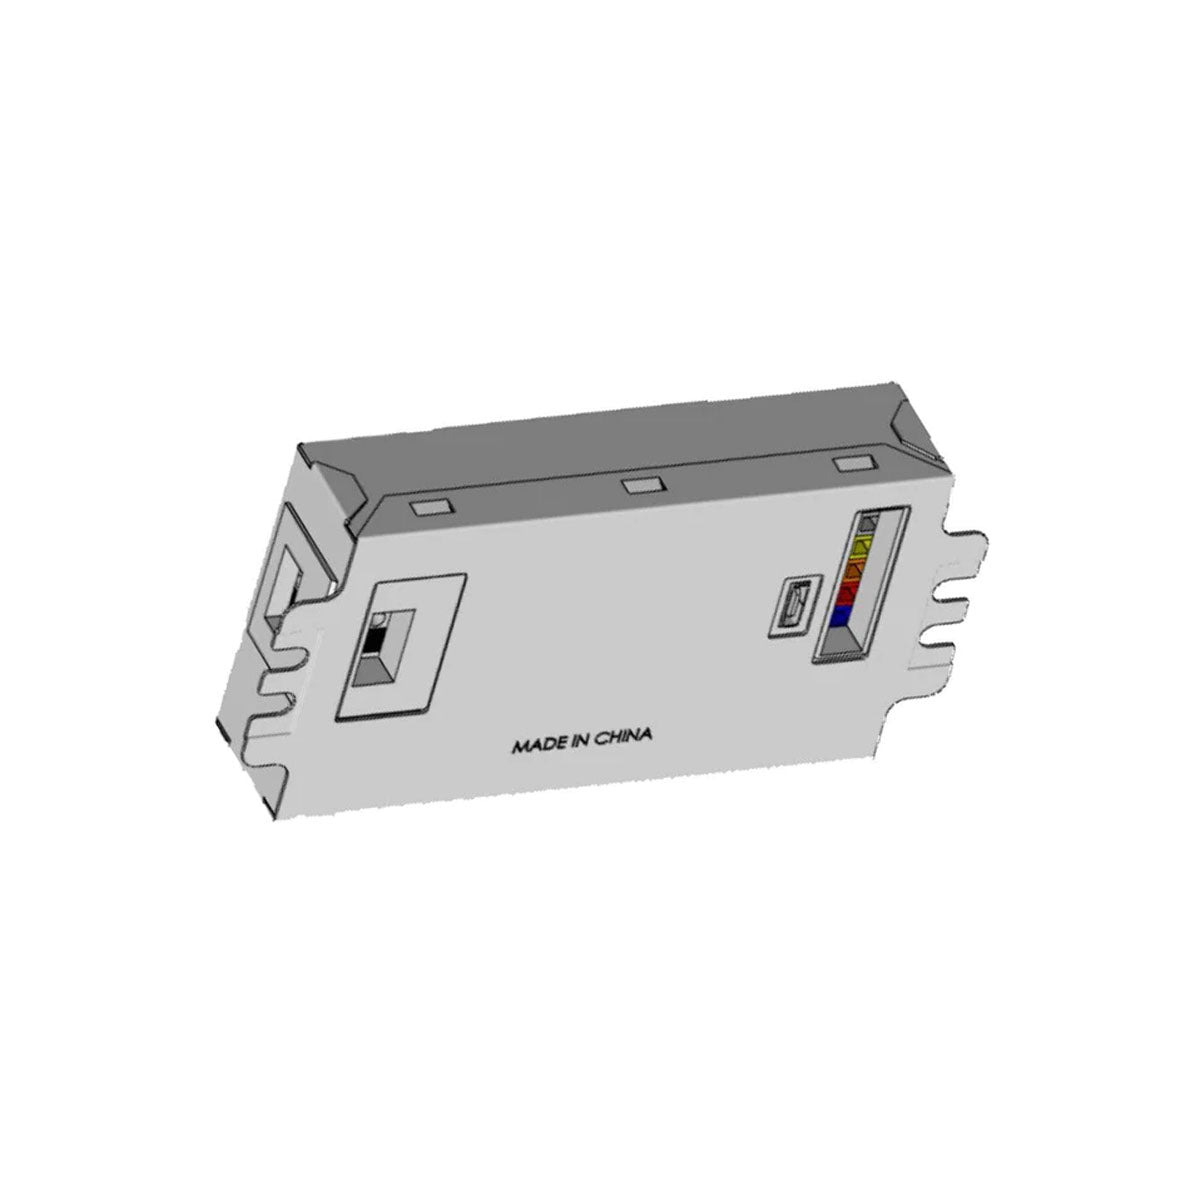 SmartCurrent, 25W, 420-1250mA Programmable LED Driver, 0-10V Dimming, 120-277V Input